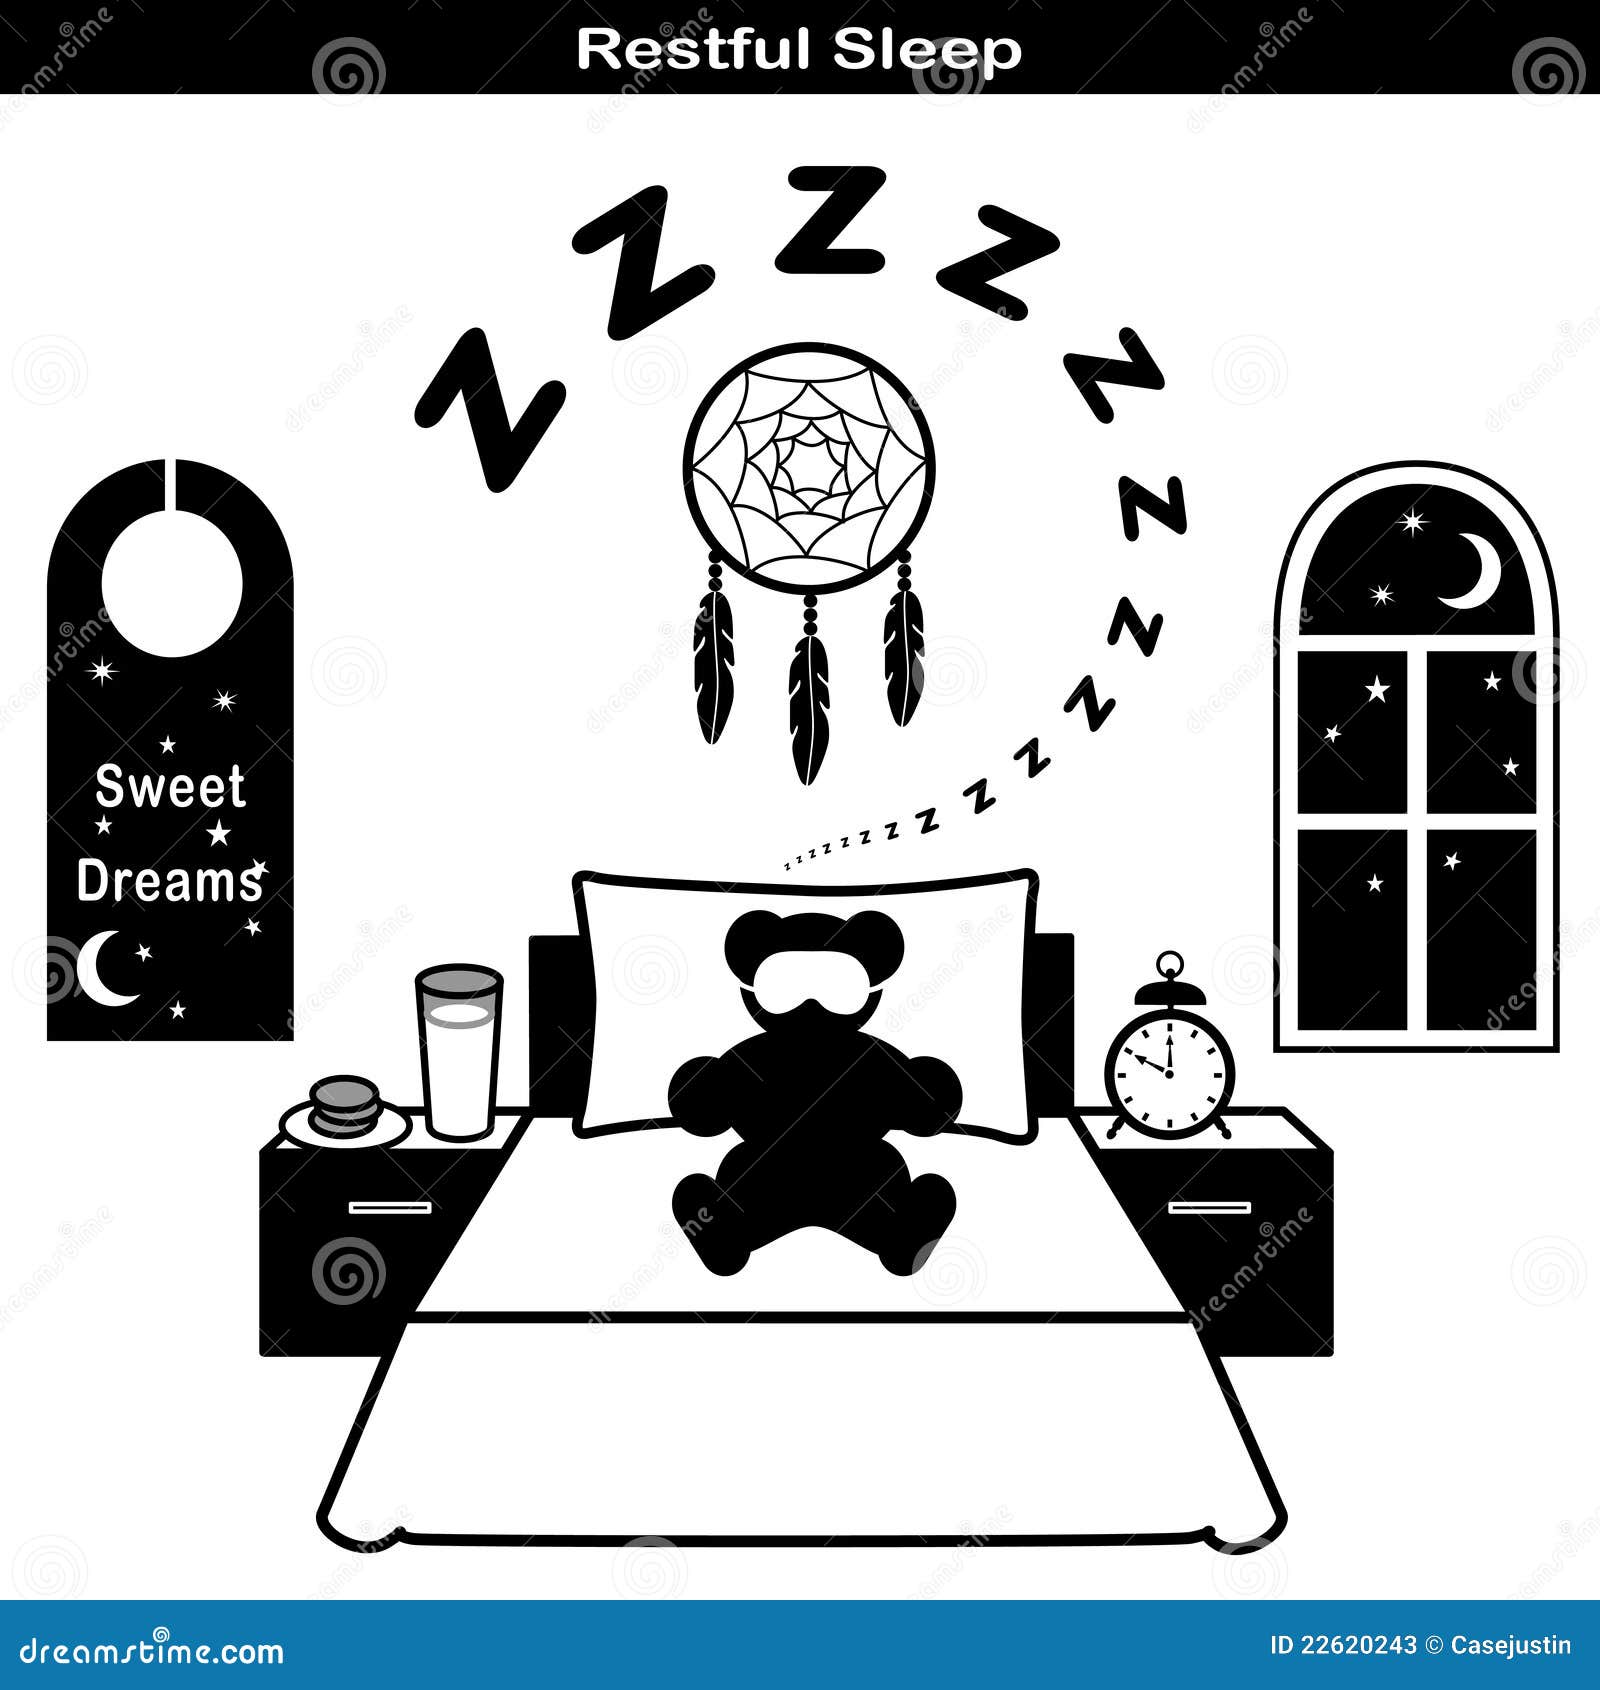 restful sleep icons